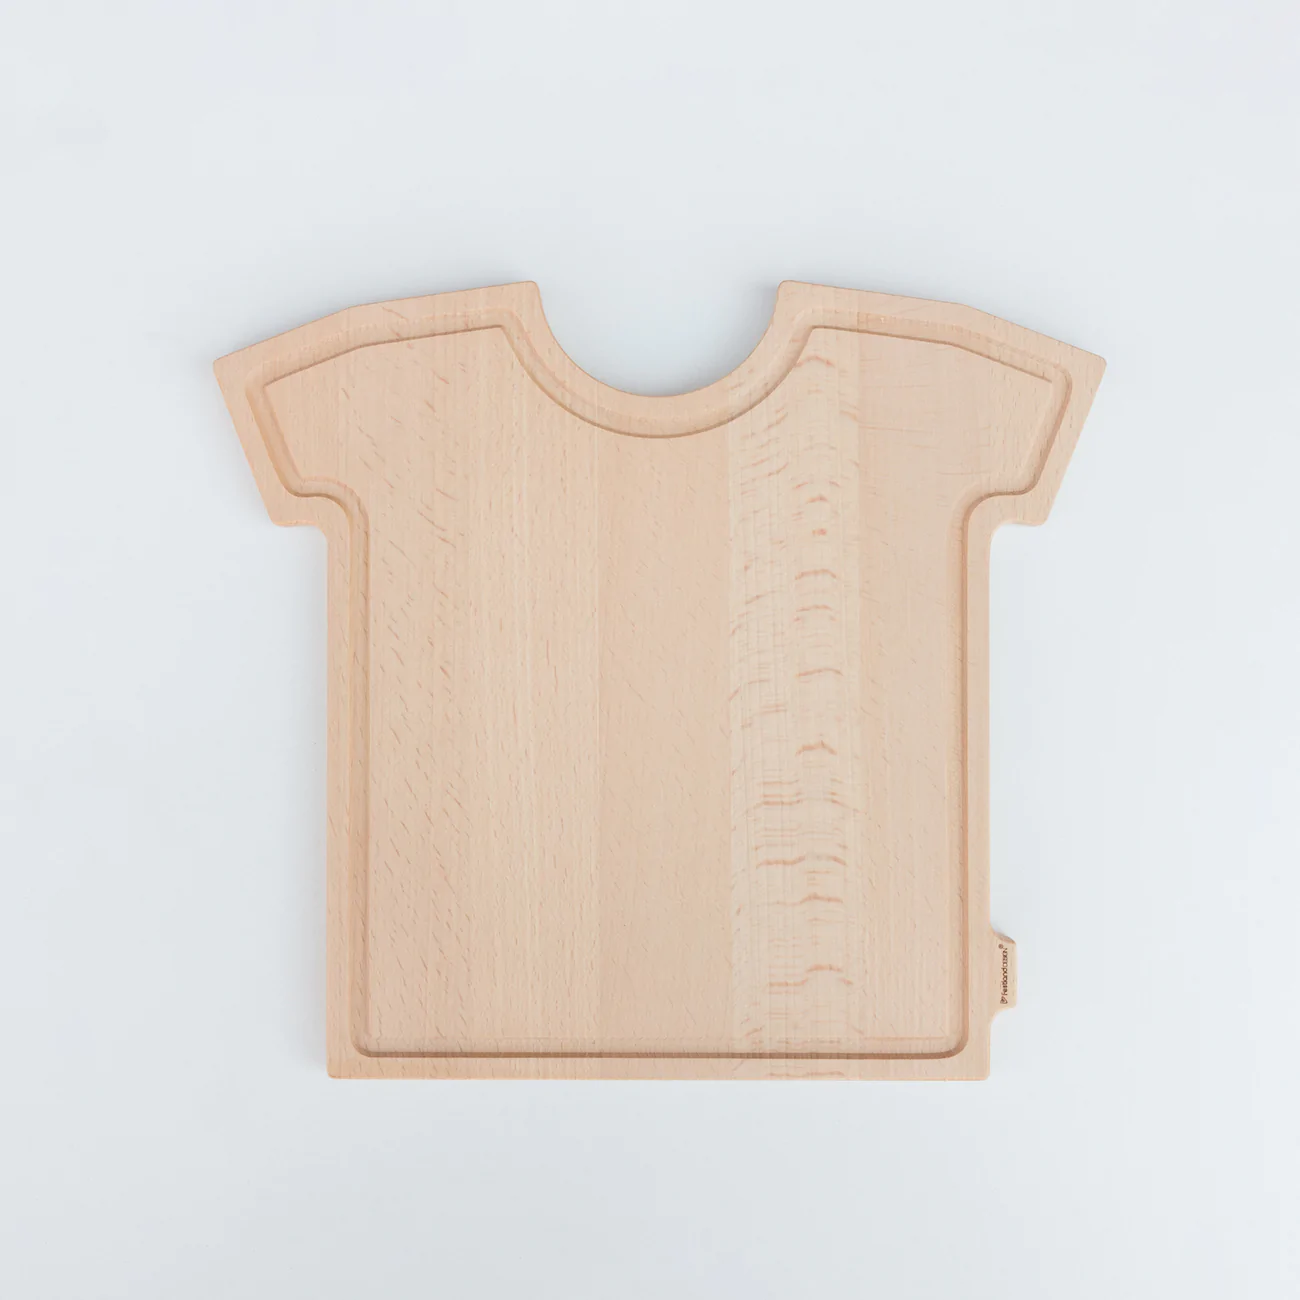 Planche personnalisée en forme de T-shirt - Horten - Zaprinta France